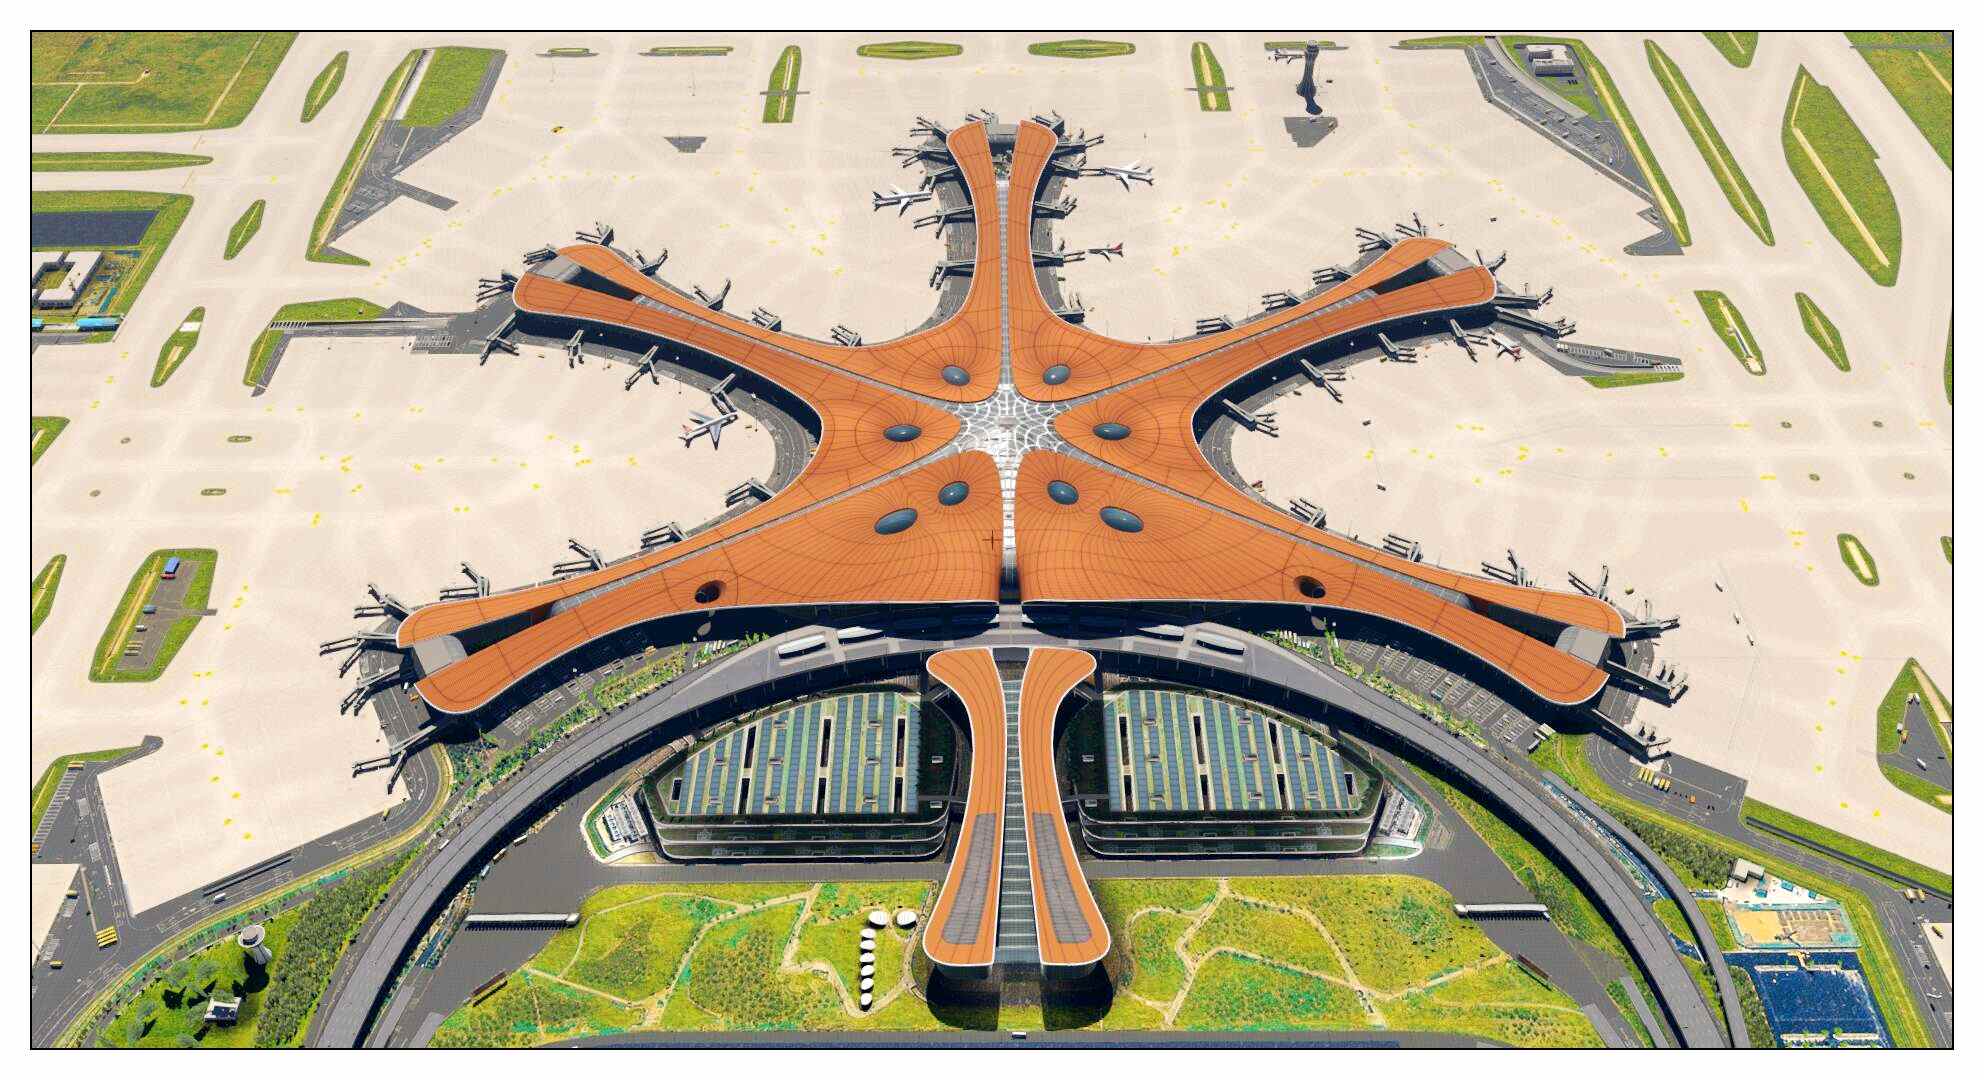 【X-Plane】ZBAD北京大兴国际机场-正式发布-5295 